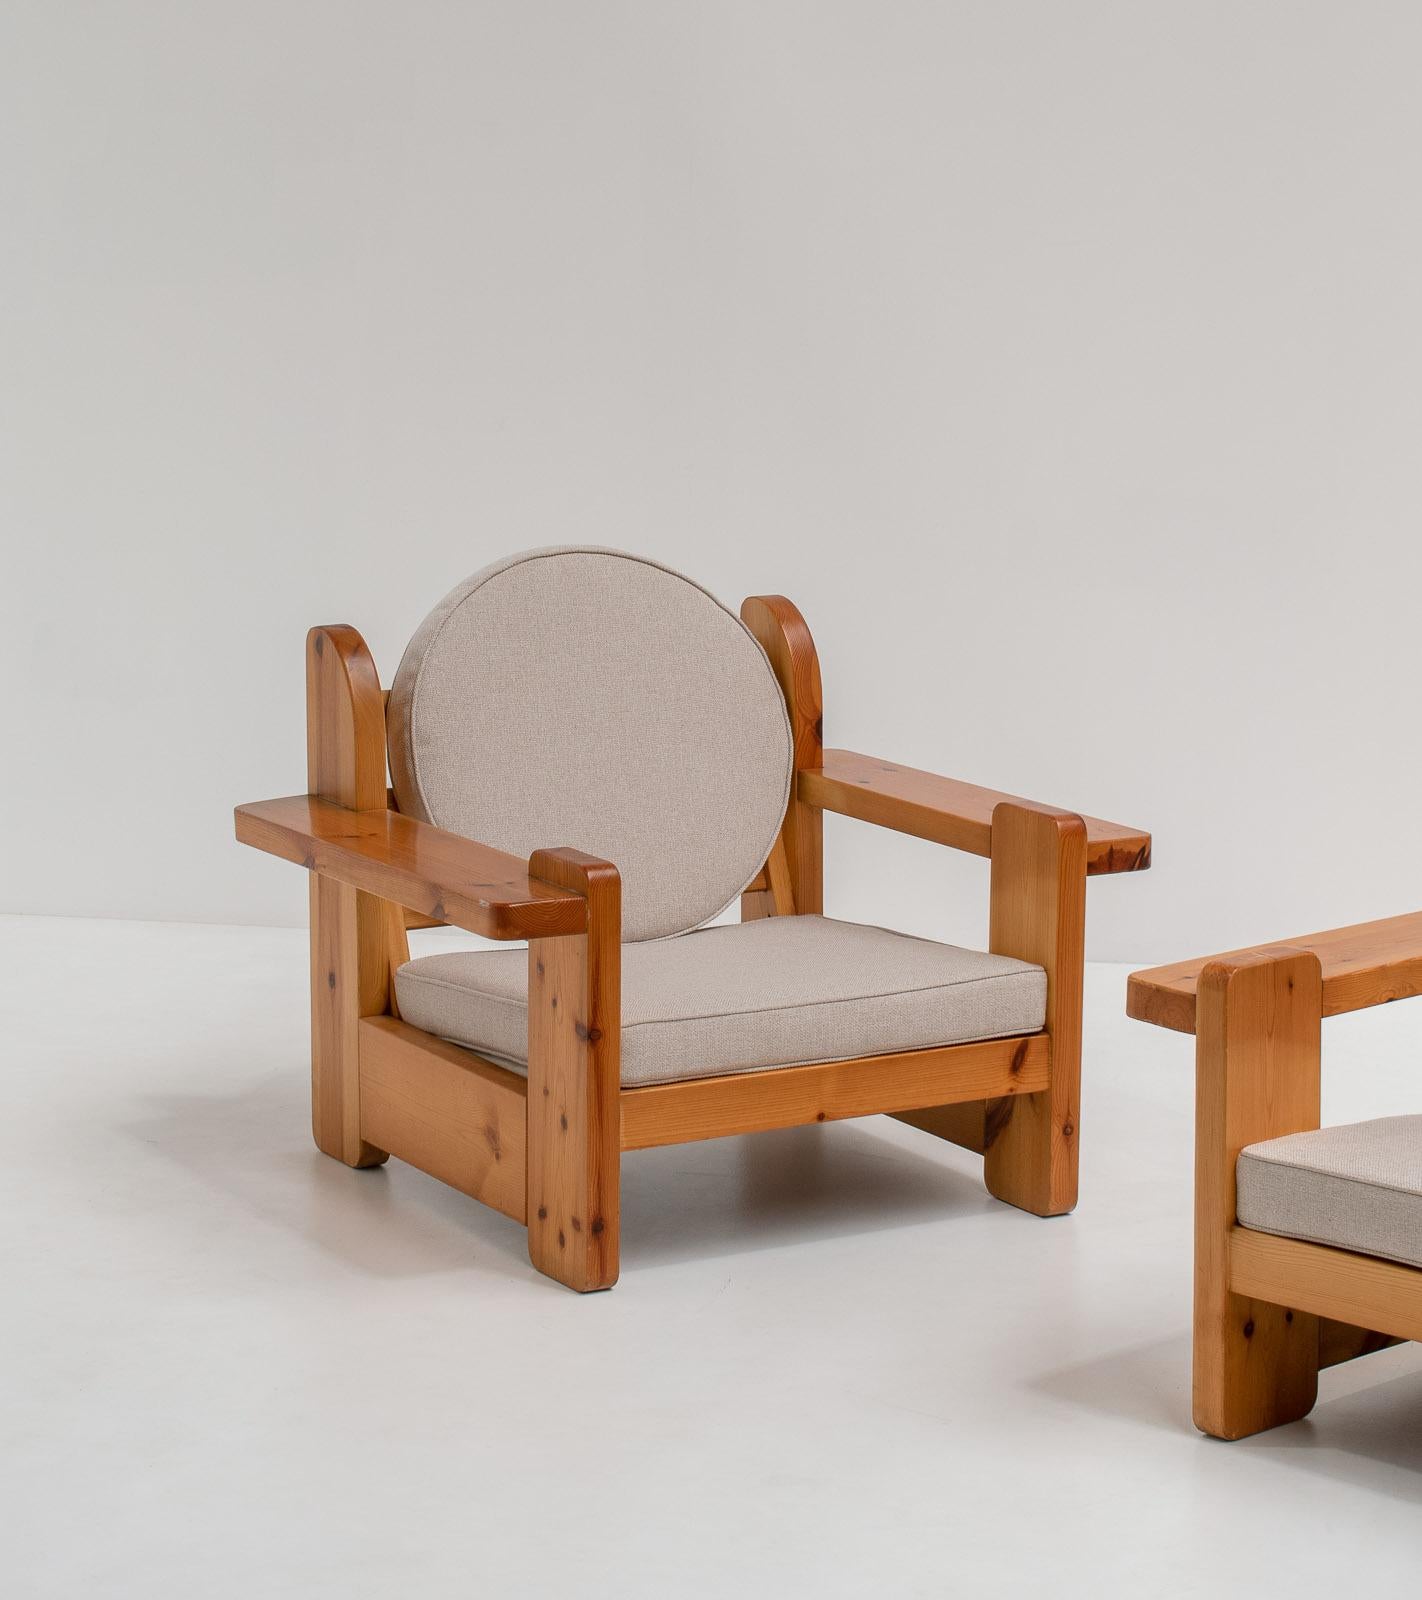 Ein erstaunliches und seltenes Paar skulpturaler Lounge-Sessel. Hergestellt aus massivem Kiefernholz. Aus den 1970er Jahren.

Diese schönen klobigen Stühle sind ein echtes Highlight. Der massive Holzrahmen ist aus großen Holzplatten gefertigt. Er